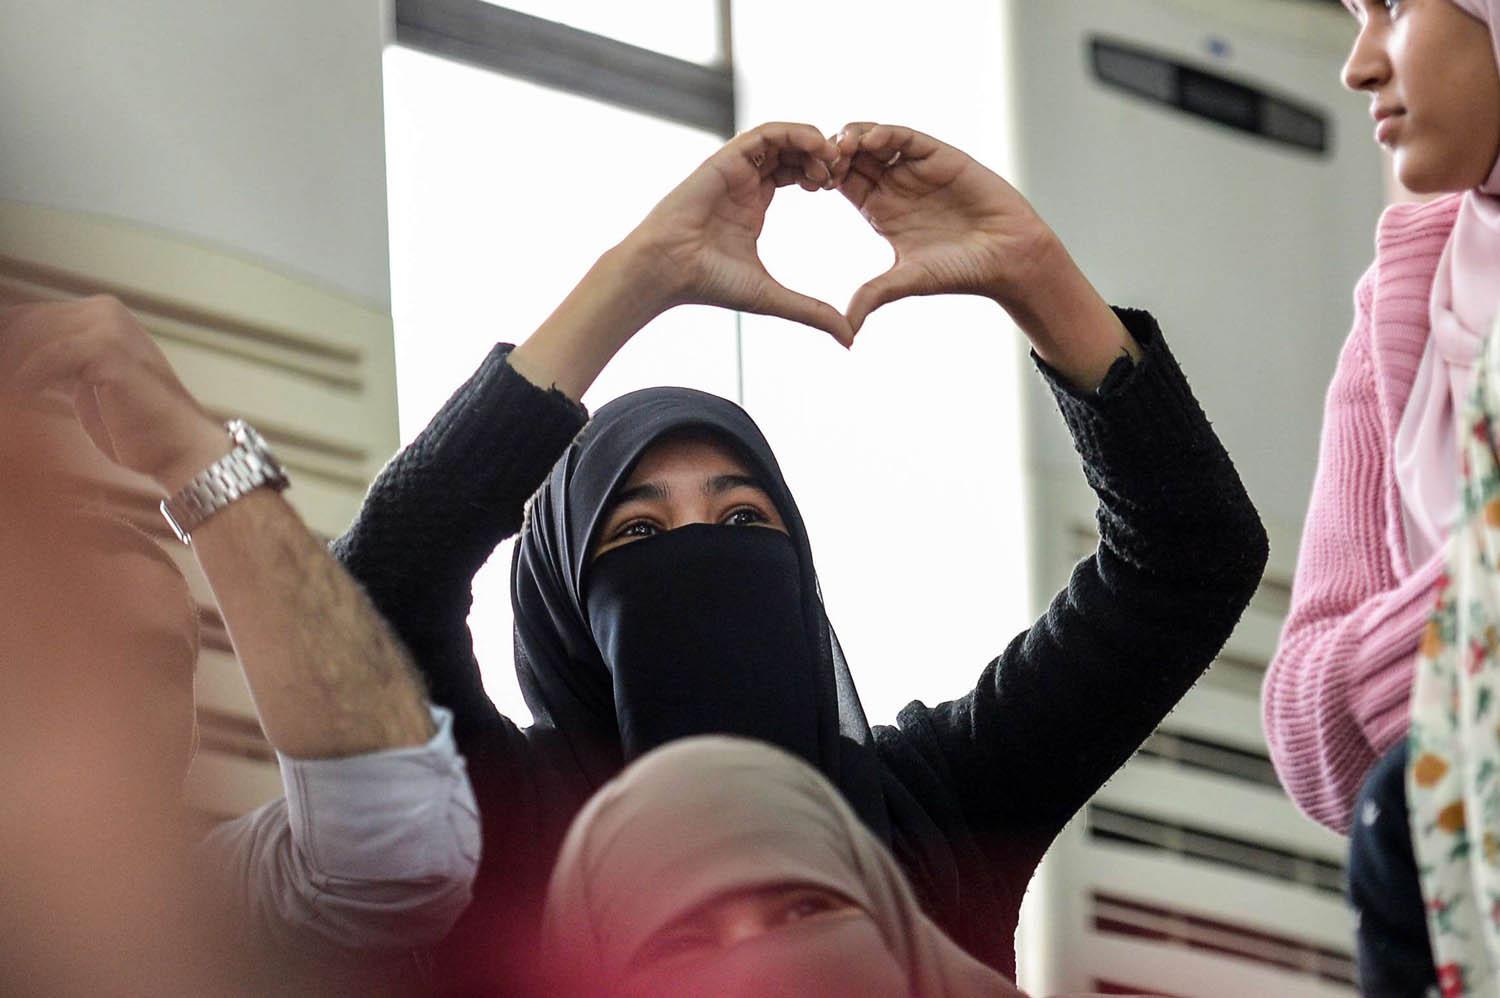 مصرية ترسم شارة الحب في محاكمة أعضاء في جماعة الأخوان في القاهرة